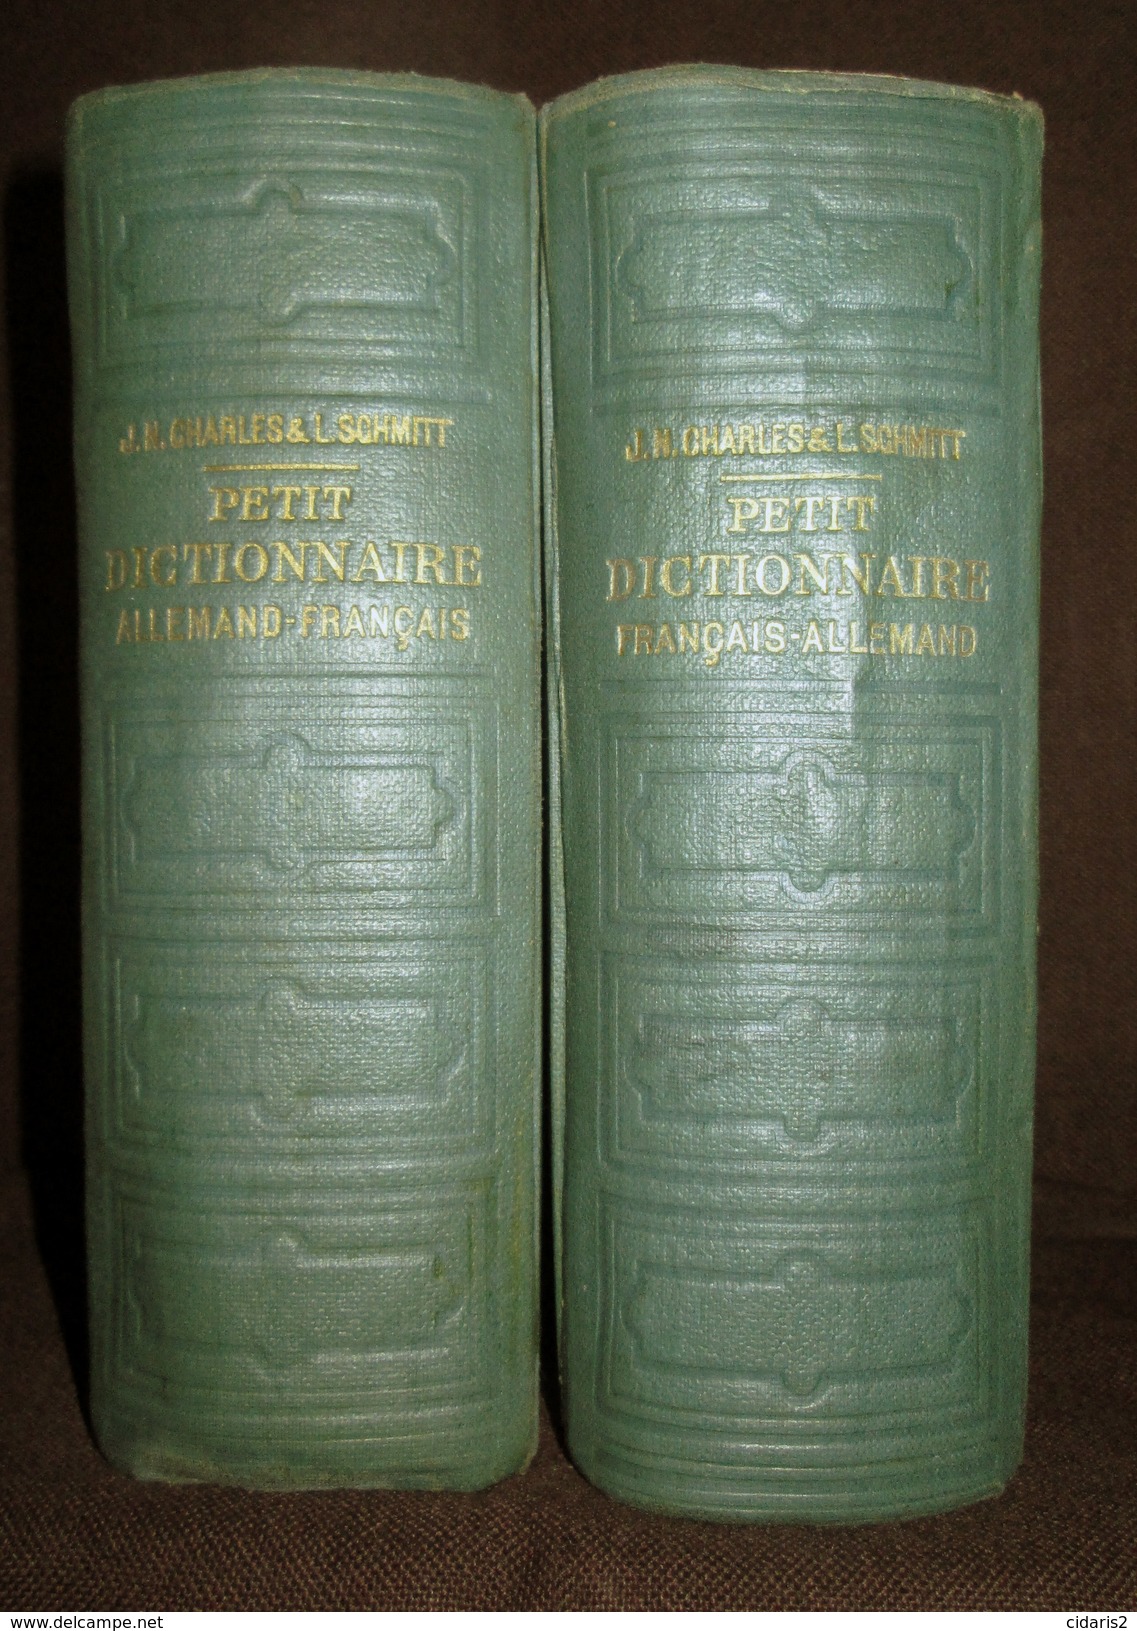 PETIT DICTIONNAIRE FRANCAIS ALLEMAND Franzosisch Deutsch Worterbuch Dictionary CHARLES SCHMITT 2 Volumes 1940 ! - Woordenboeken